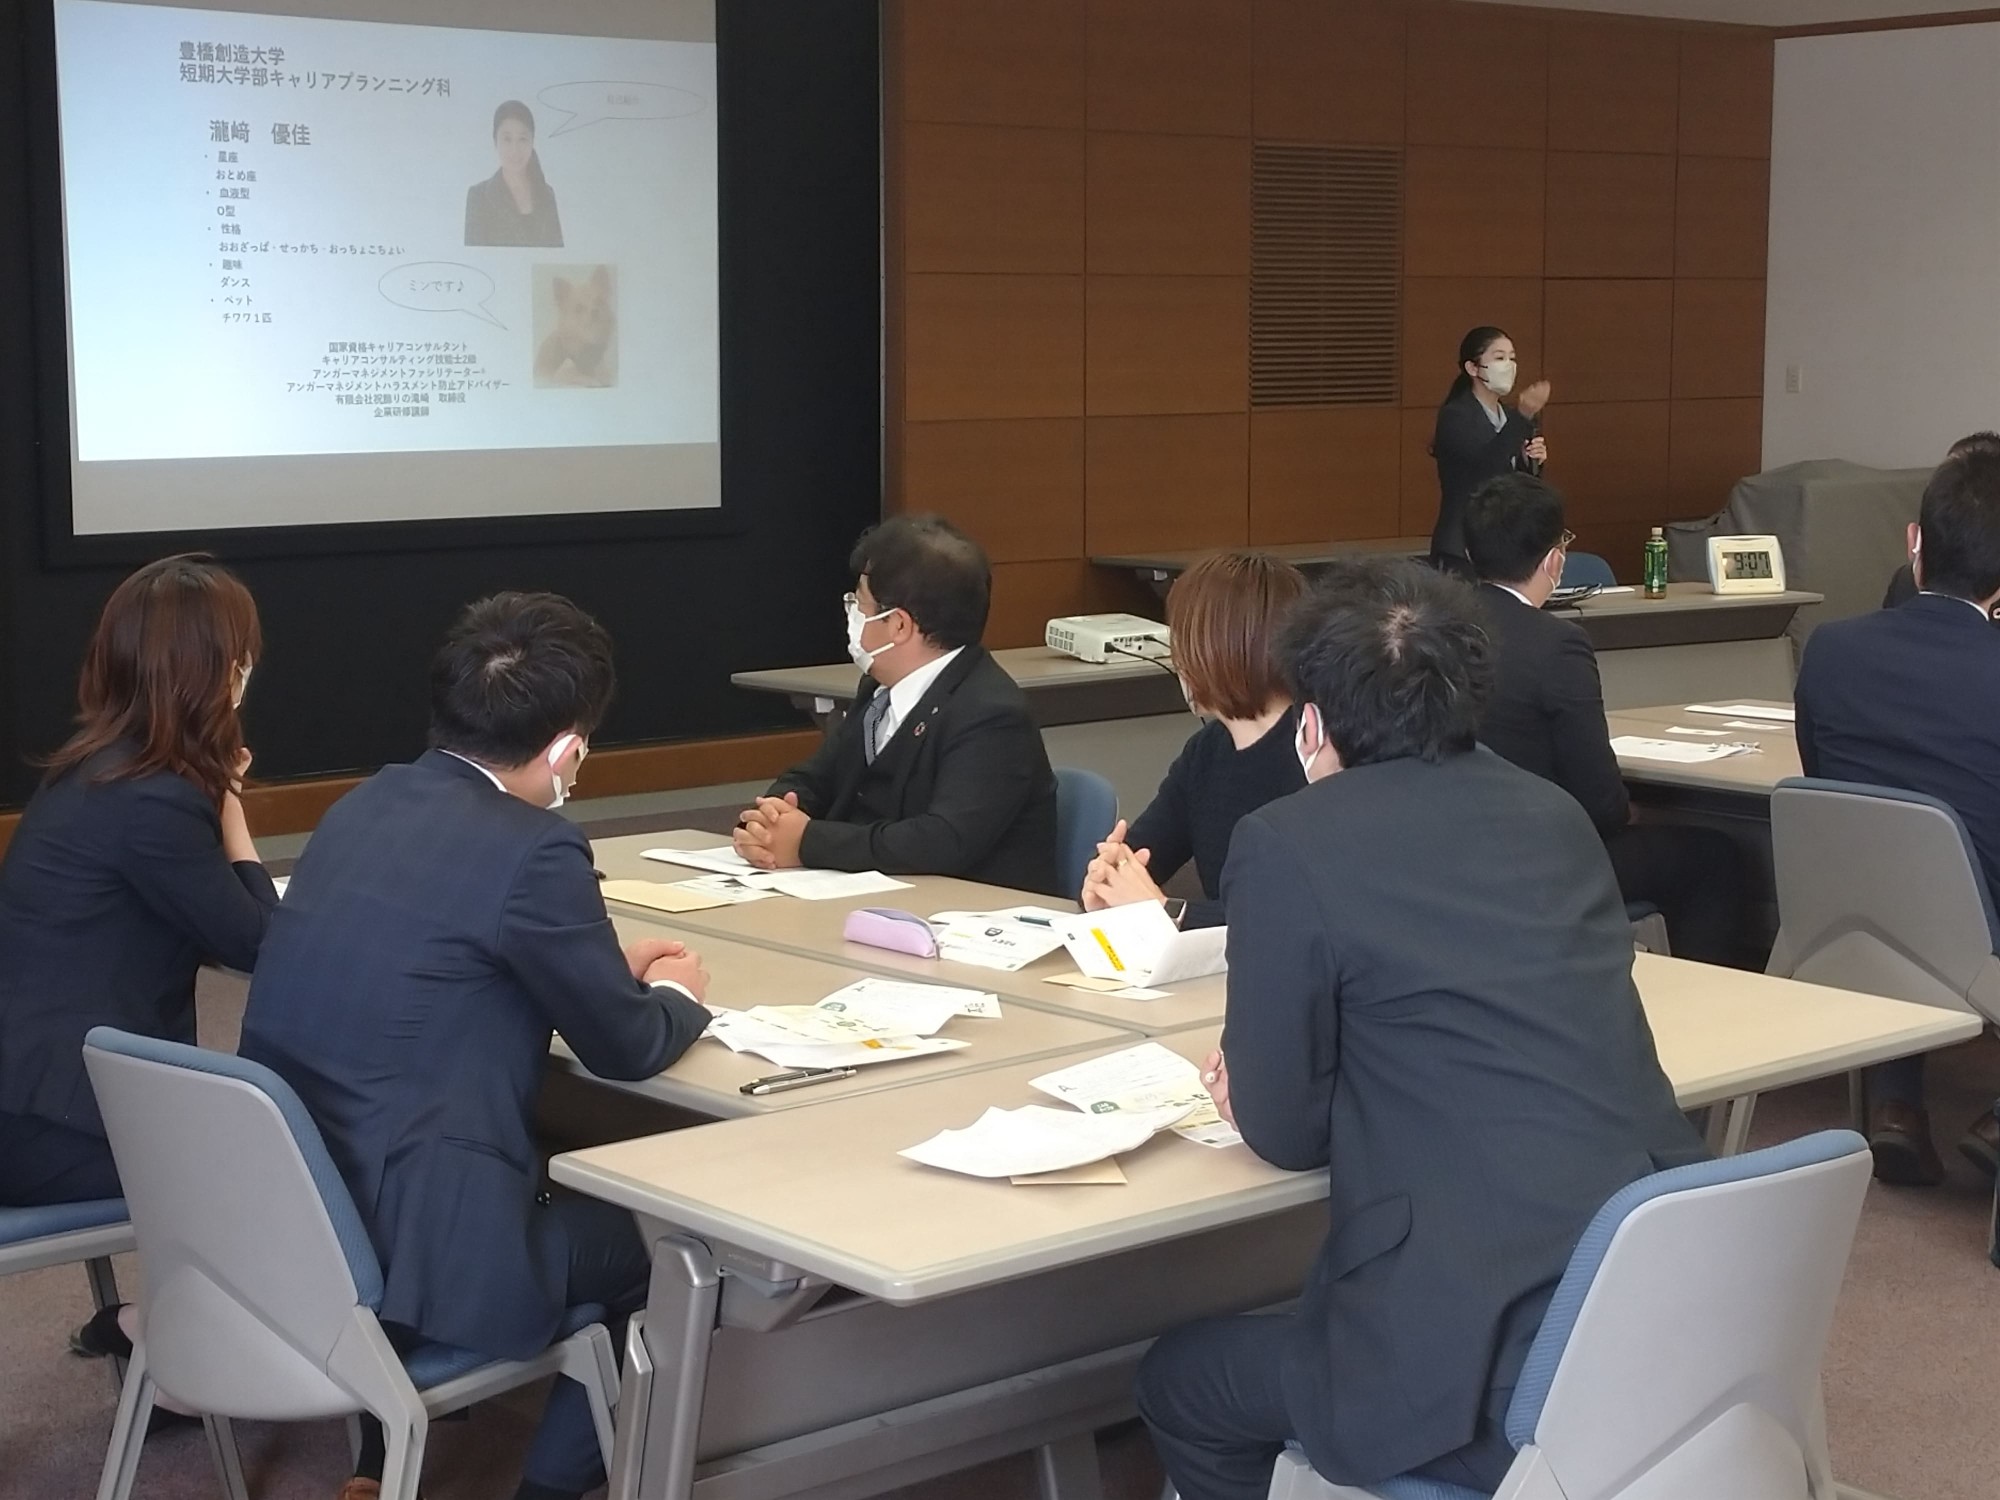 キャリアプランニング科の瀧﨑優佳准教授が豊橋信用金庫の研修会講師を務めさせていただきました。